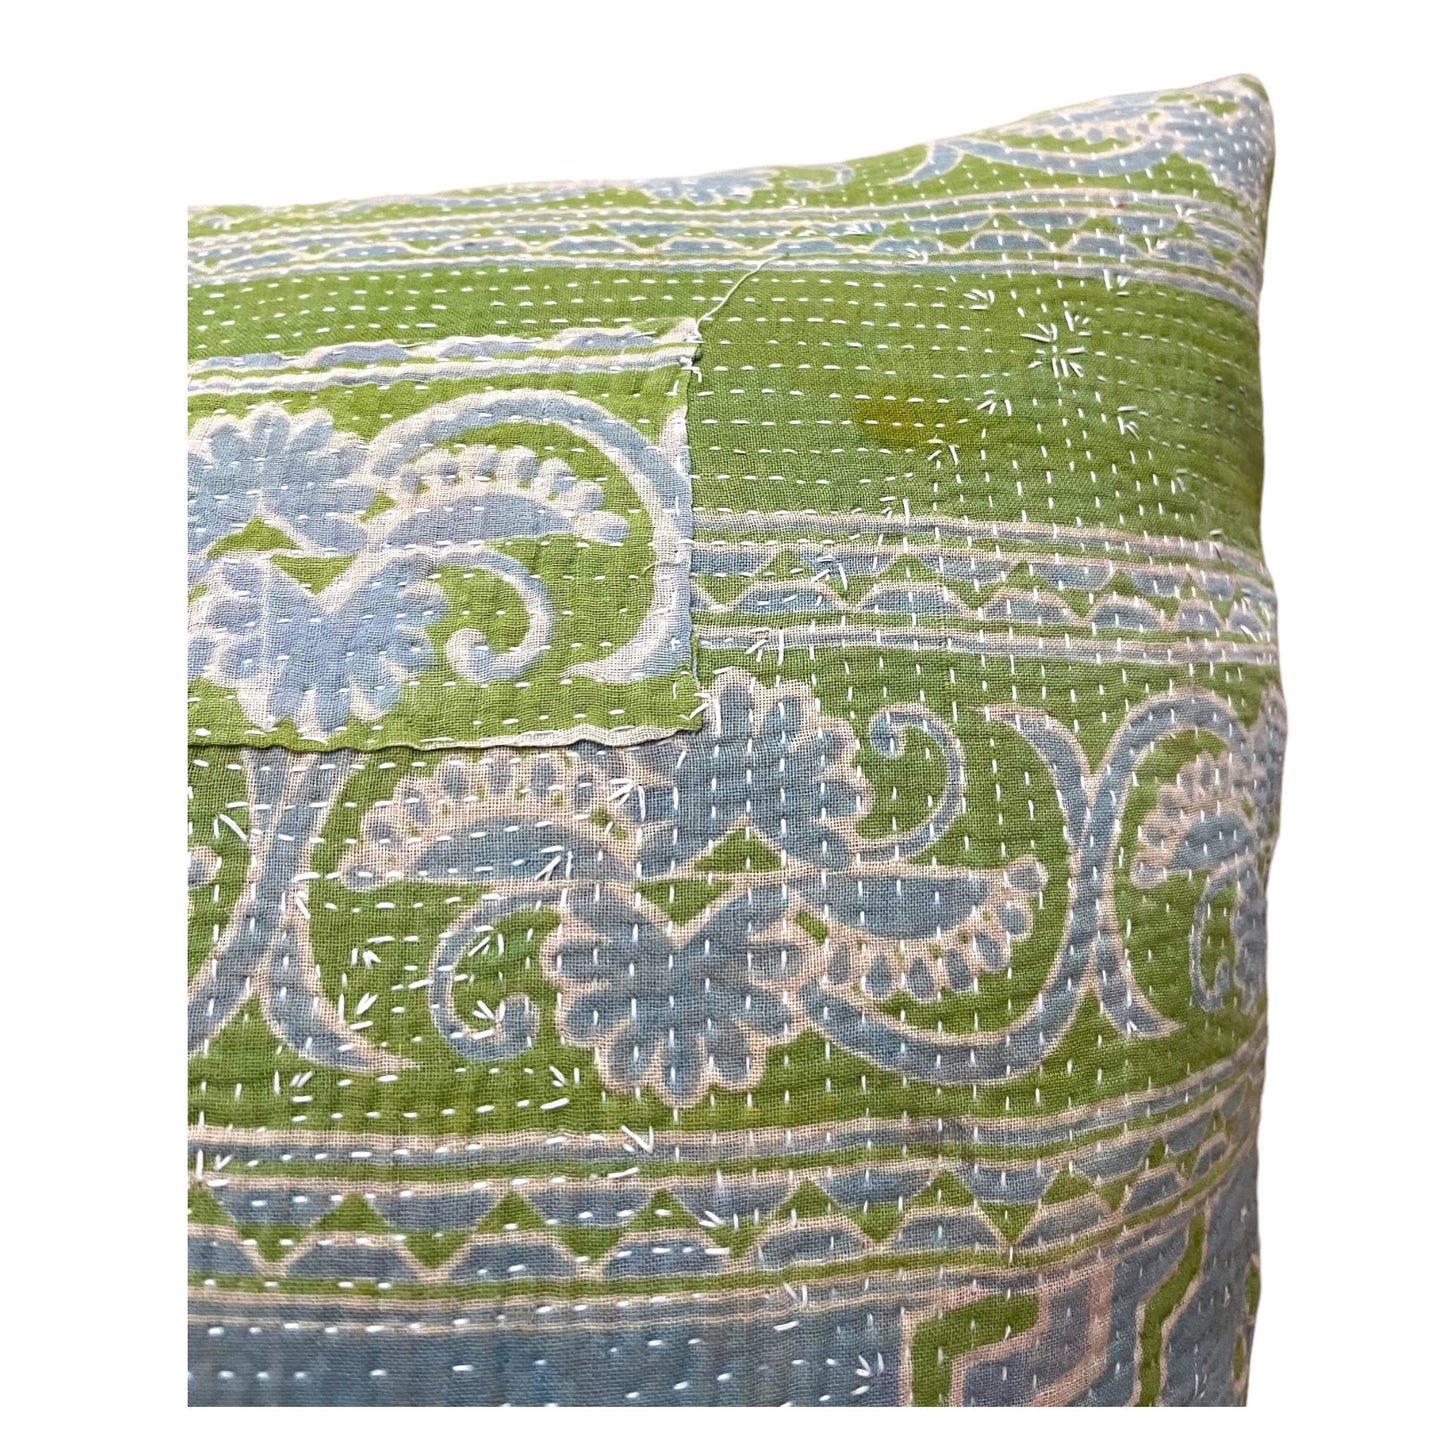 Green and blue kantha cushion close up